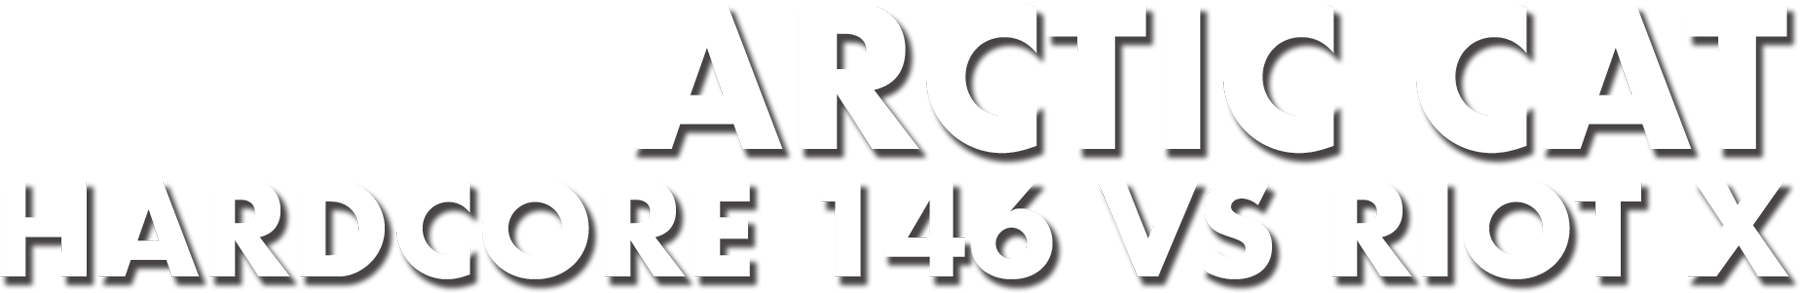 Arctic Cat: Hardcore 146 vs Riot X text